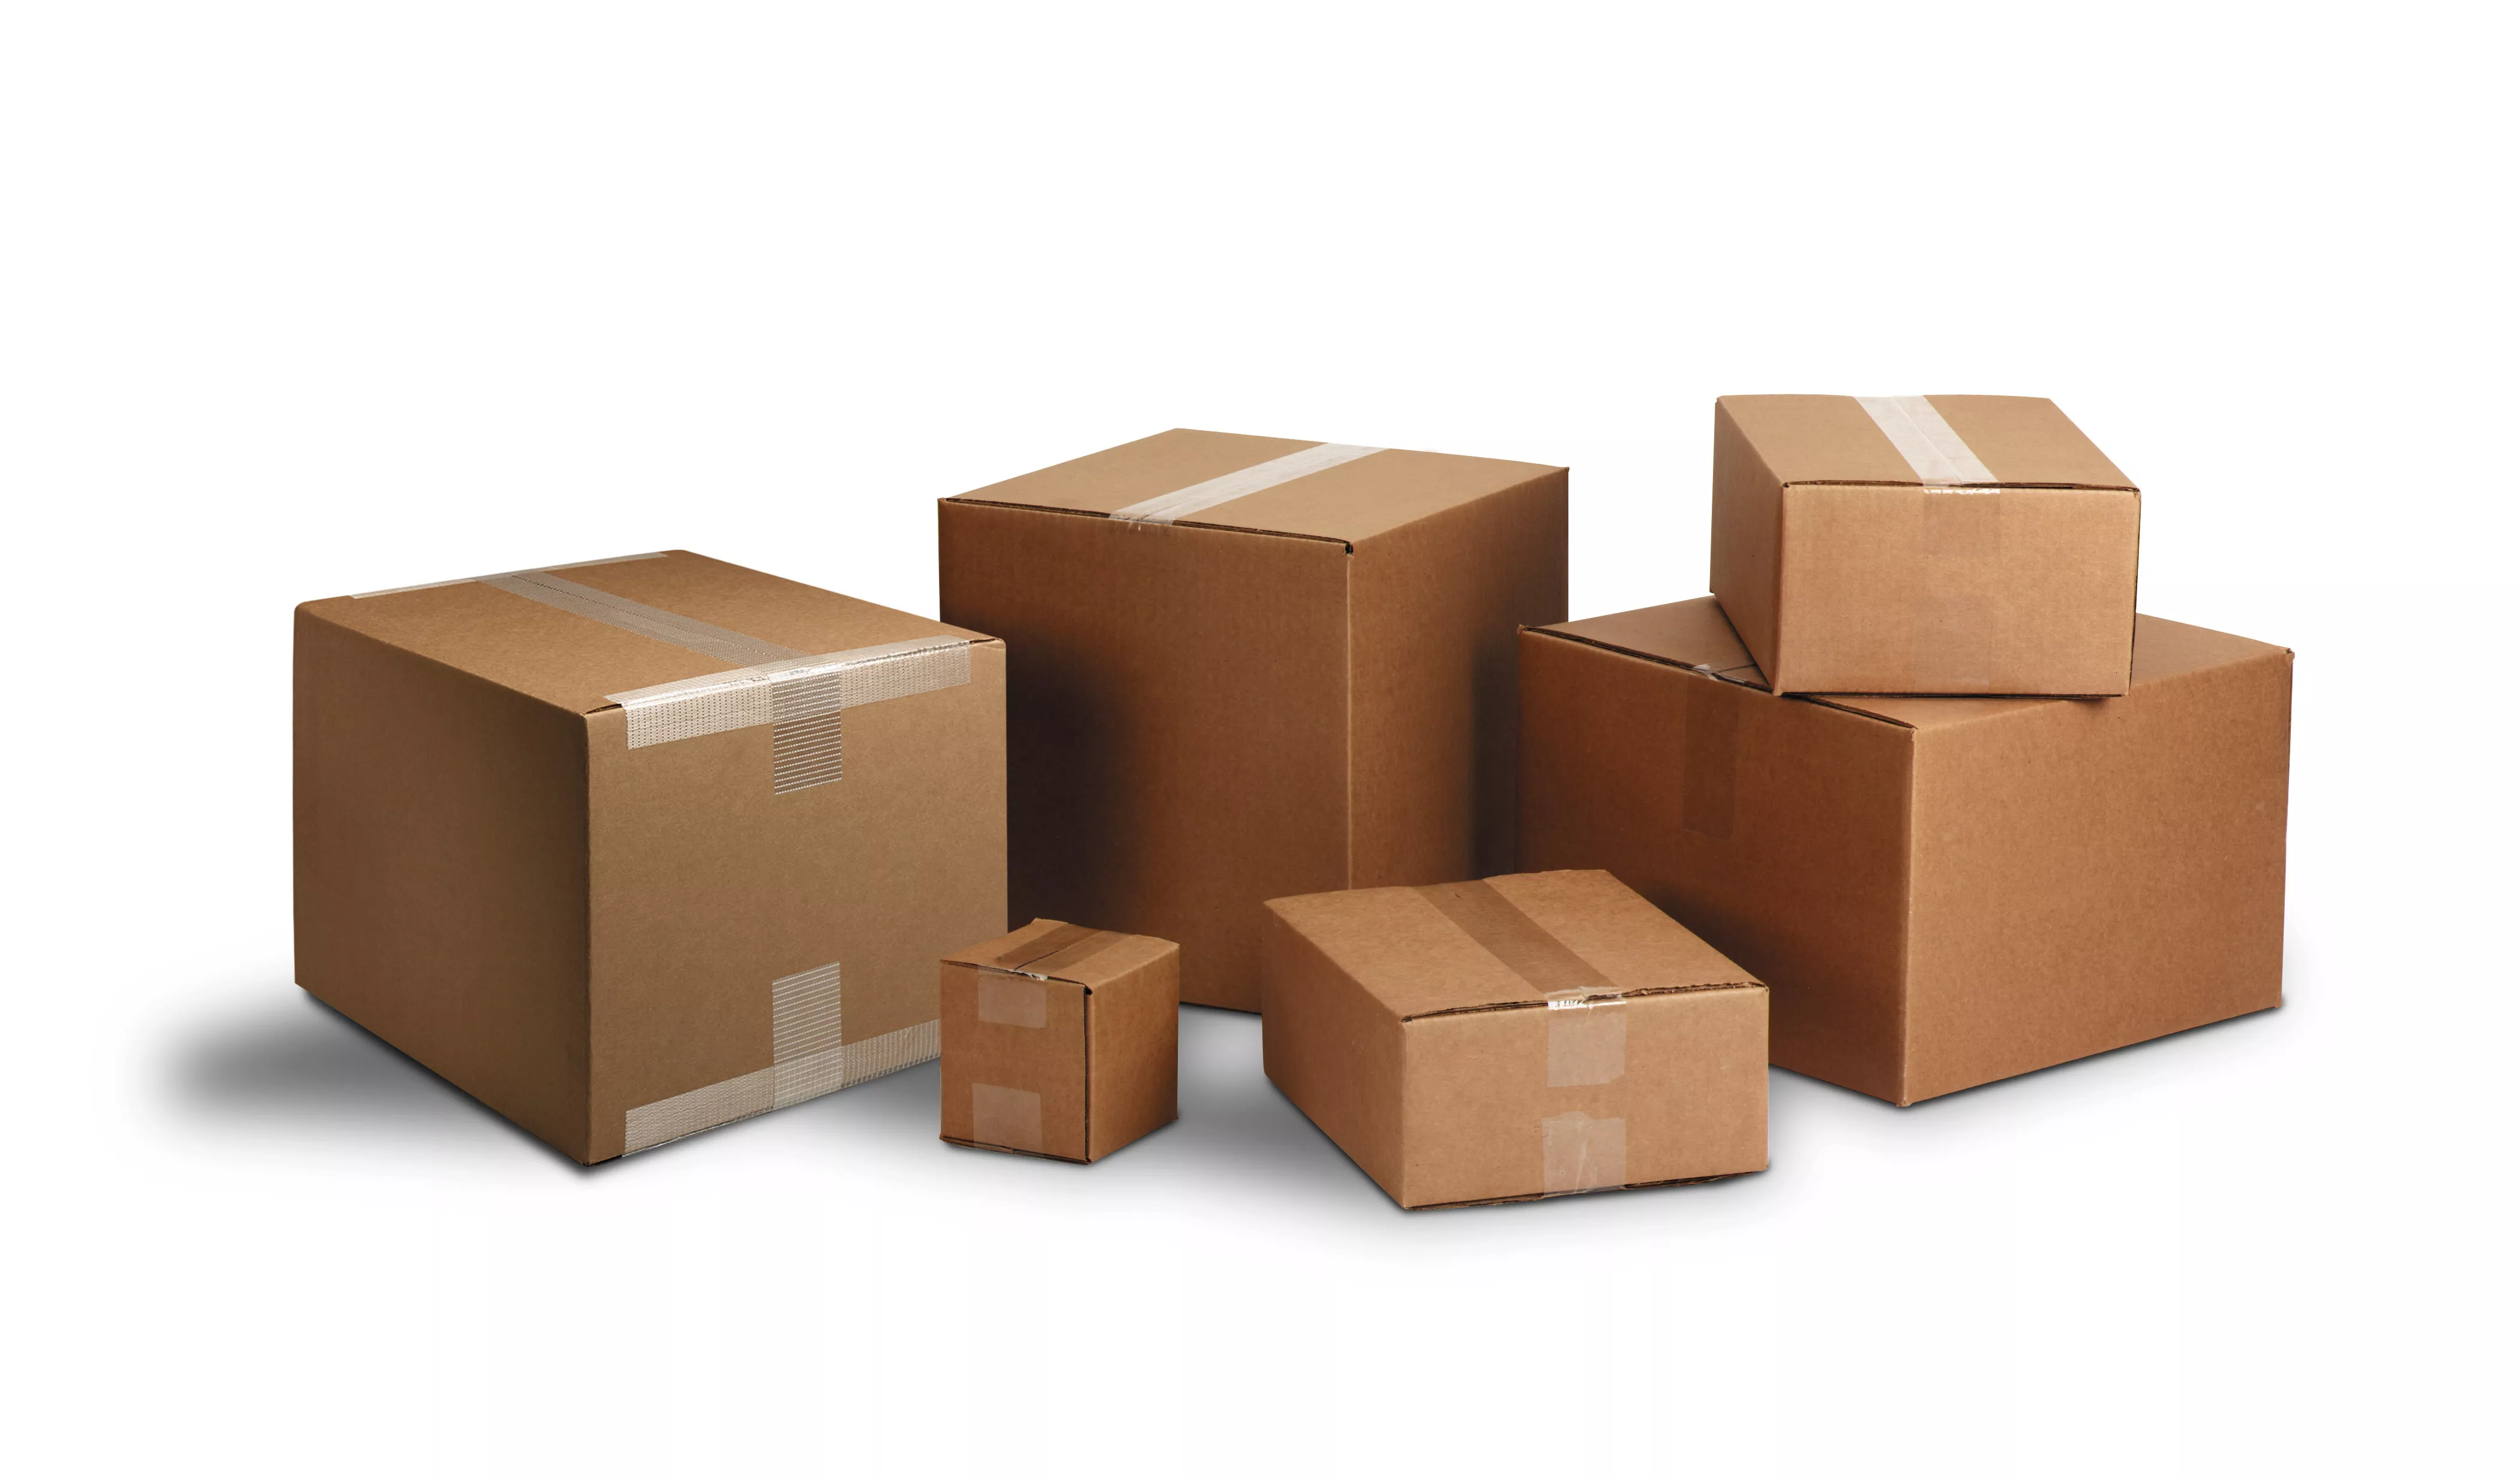 SKU 7100260715 | Scotch® Shipping Packaging Tape 3350-RD-36GC